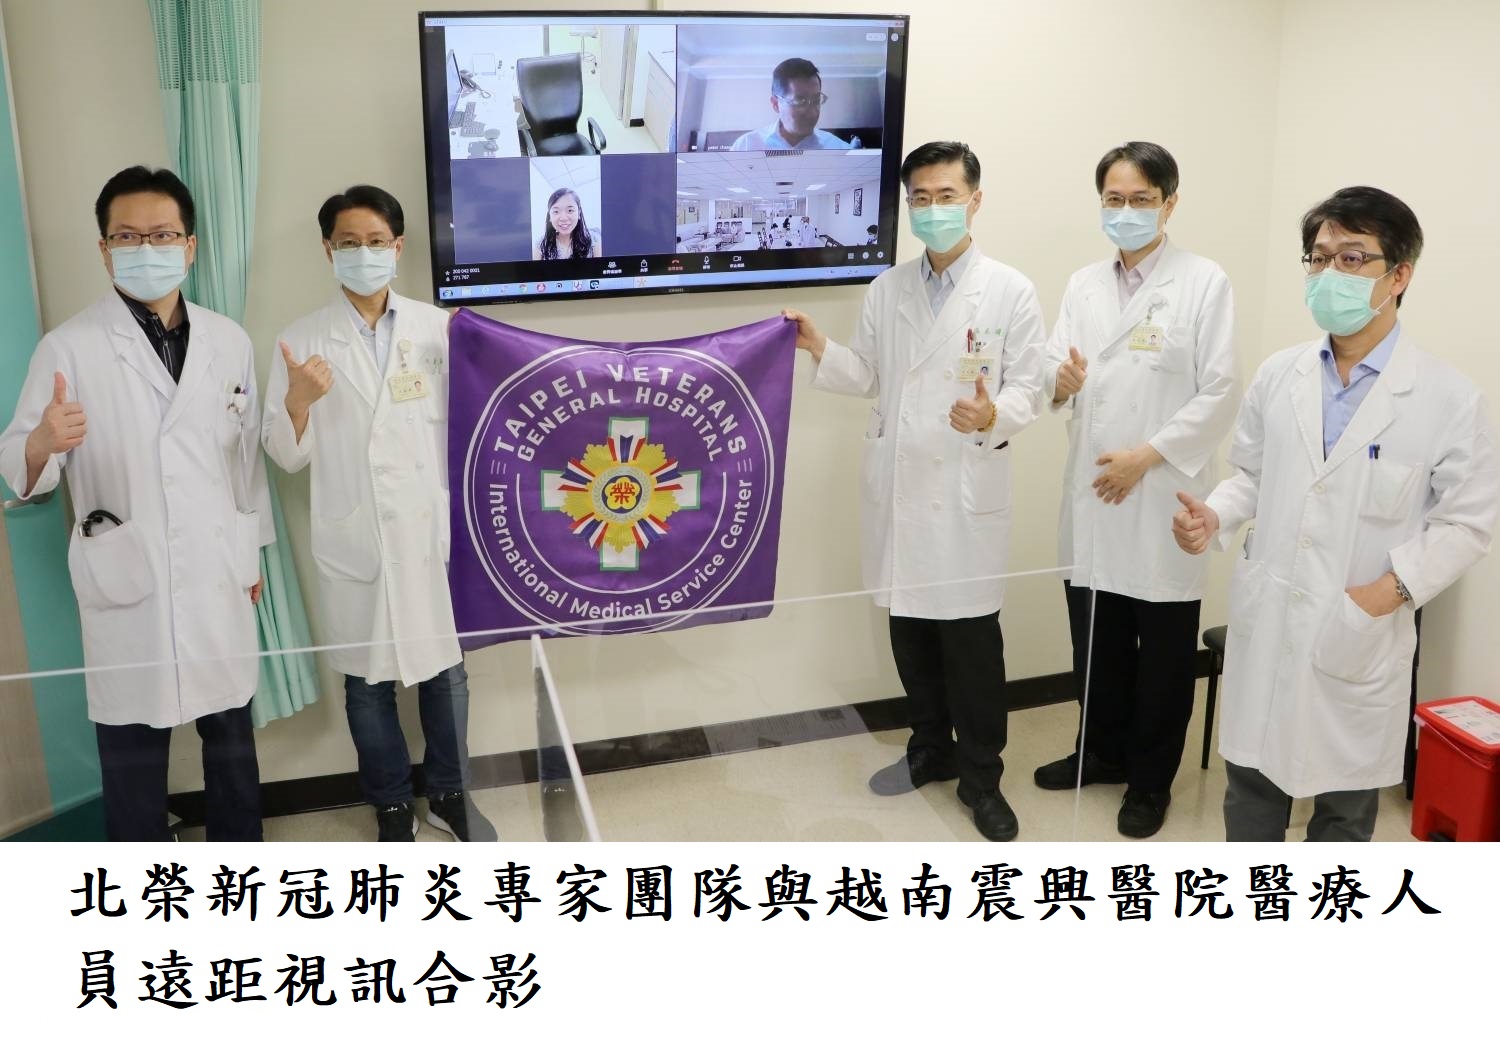 北榮新冠肺炎專家團隊與越南震興醫院醫療人員遠距視訊合影